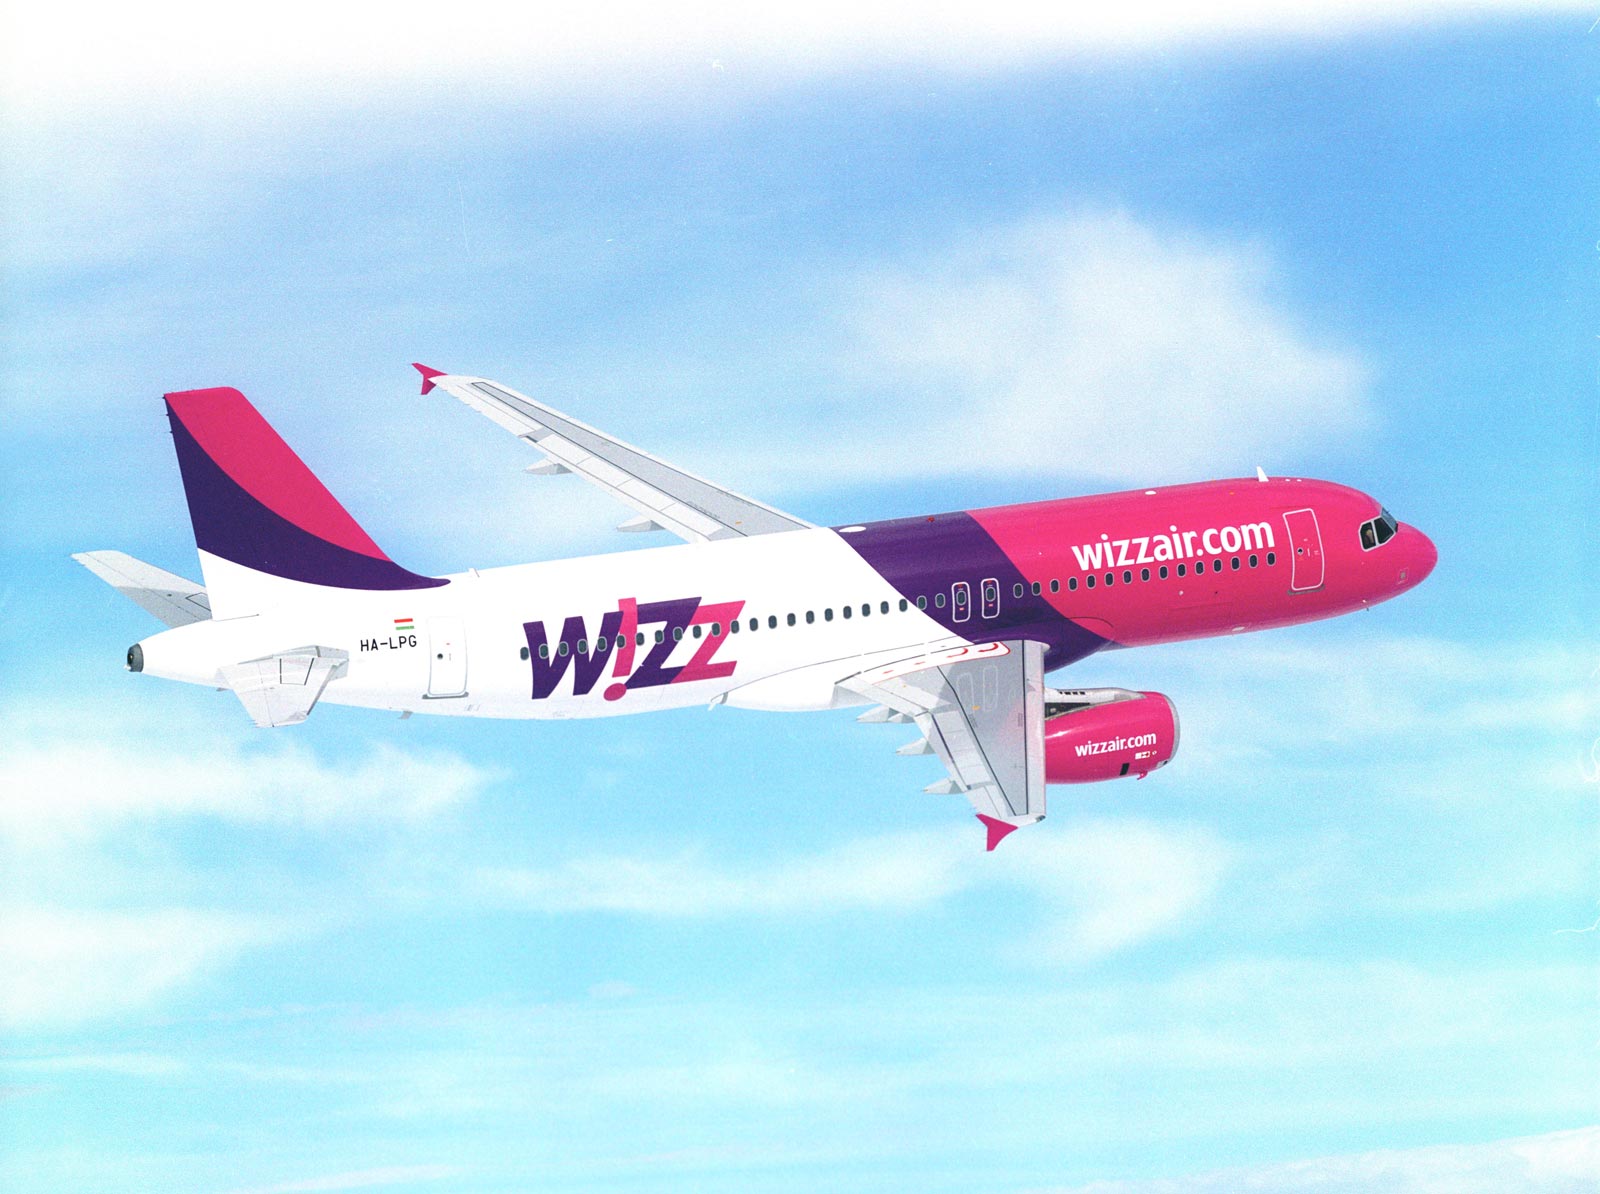 Les Airbus de la compagnie hongroise Wizz Air intéressent le groupe Air France pour développer son offre low cost  - DR